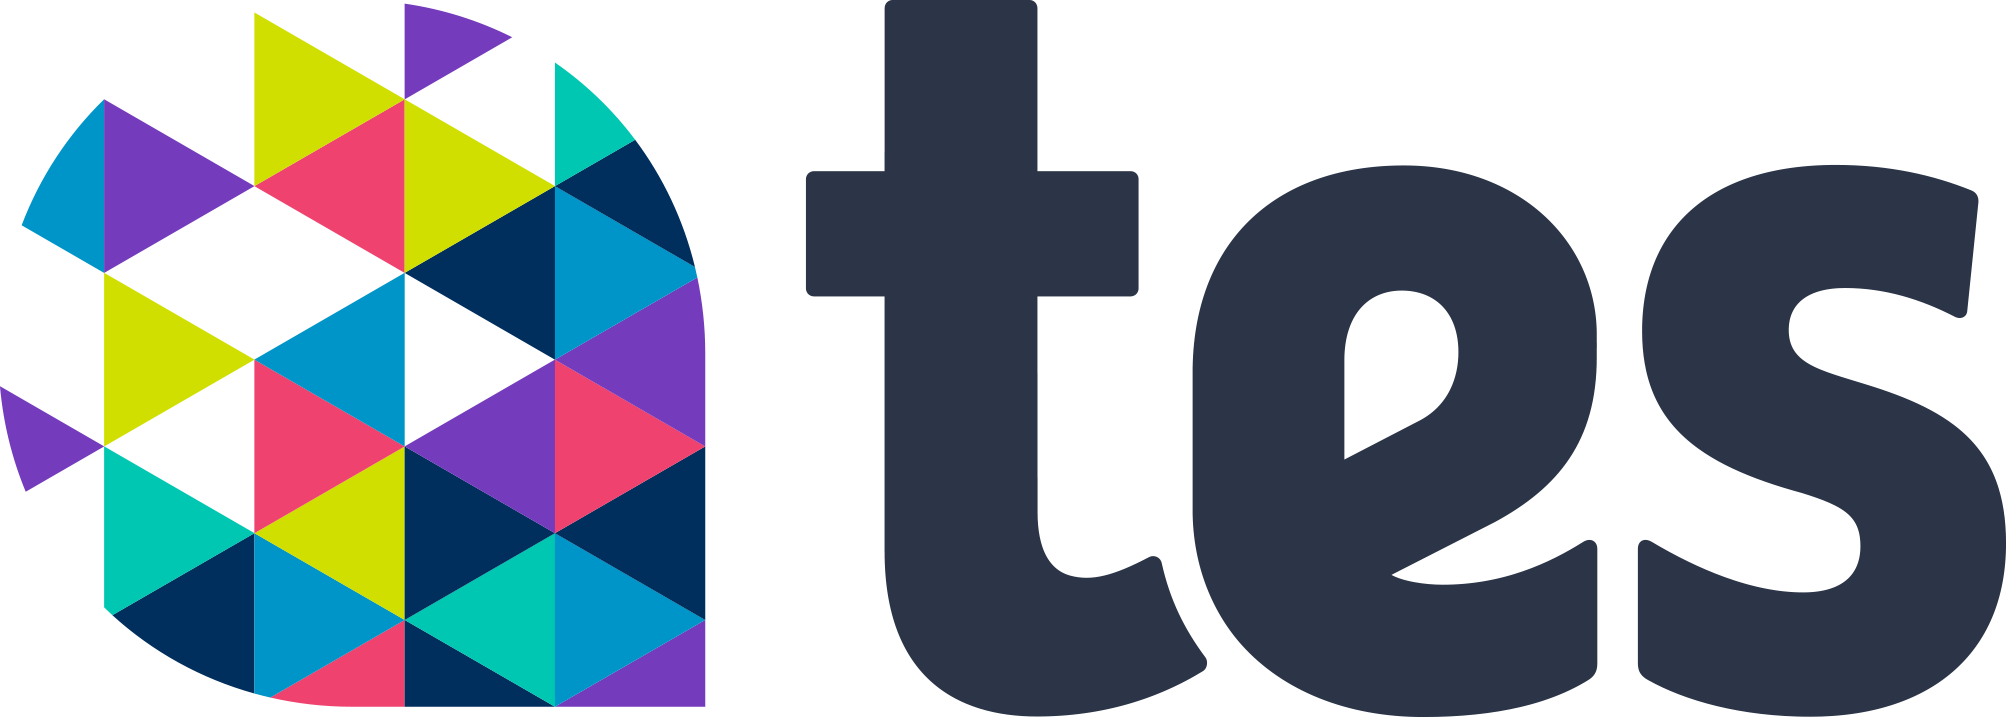 Transparent image of tes logo